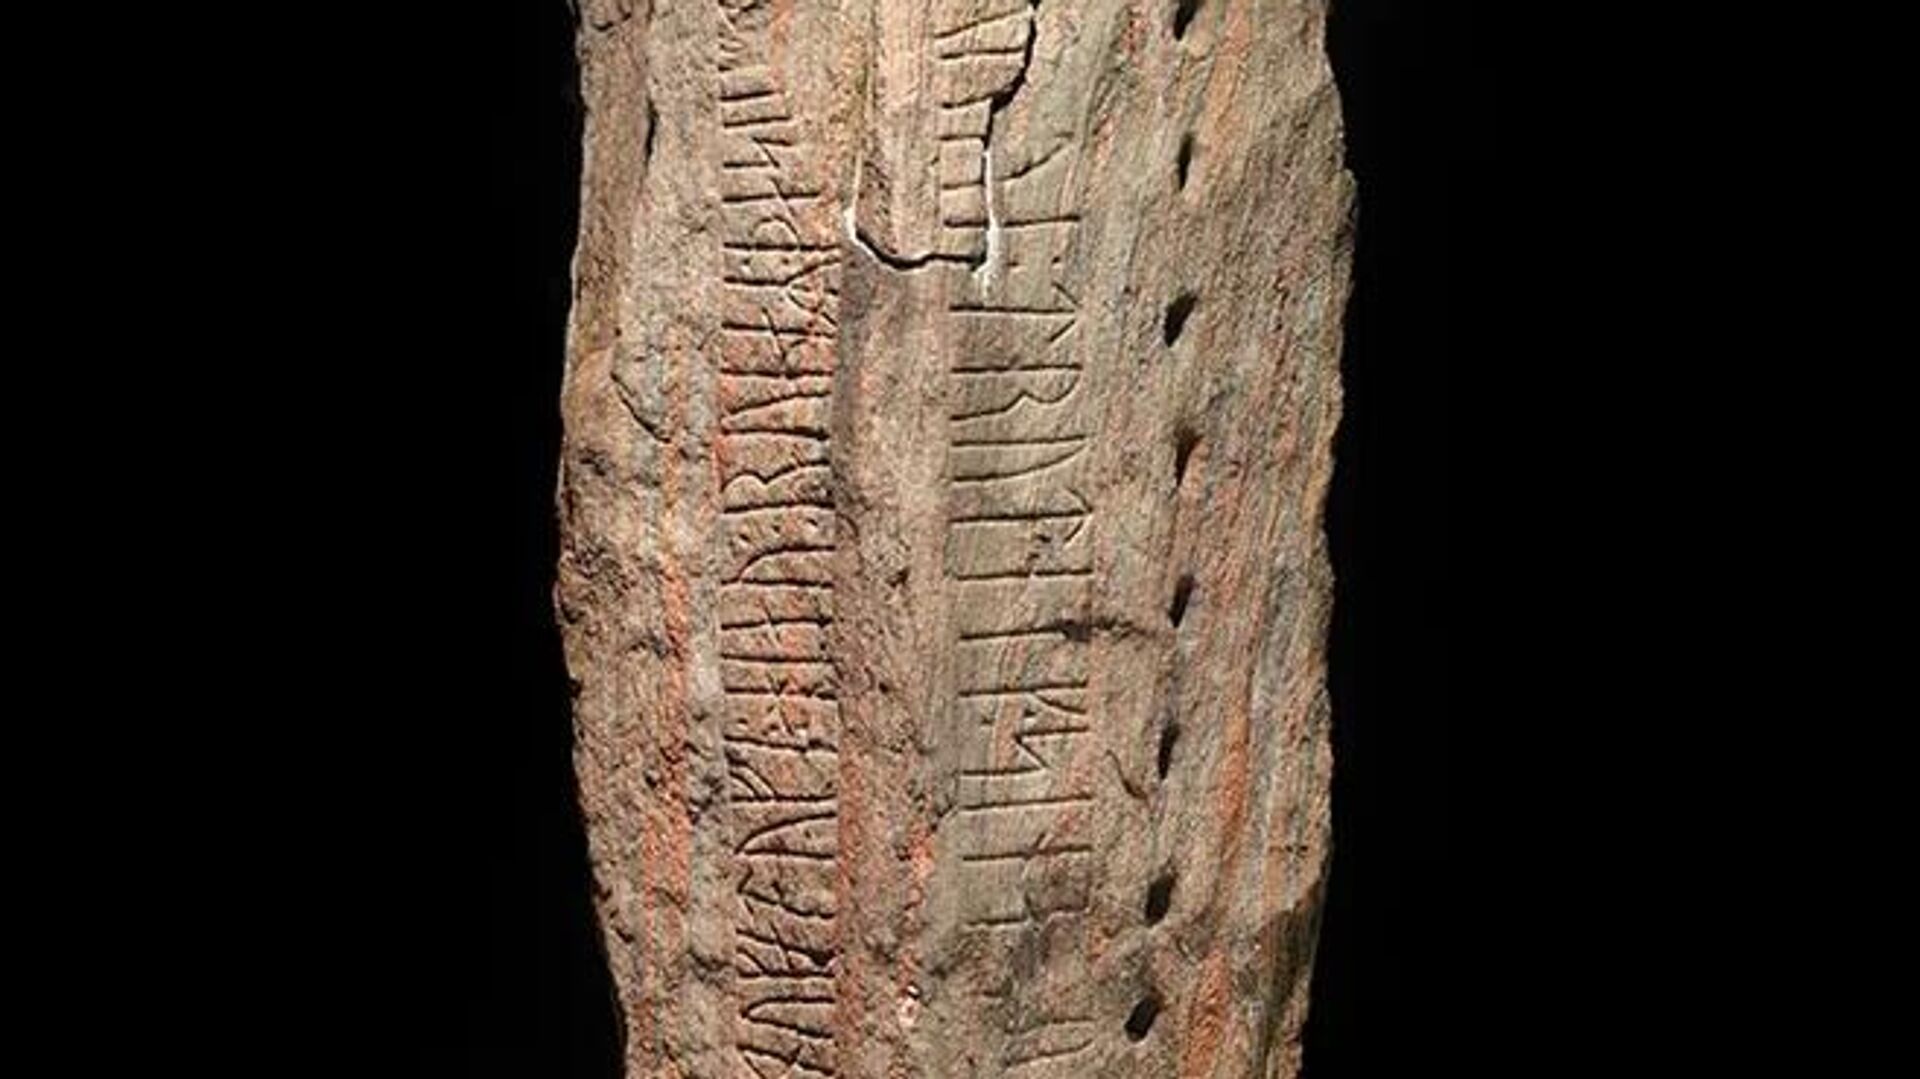 Runas vikingas de 1.000 años de antigüedad revelan el rol de una